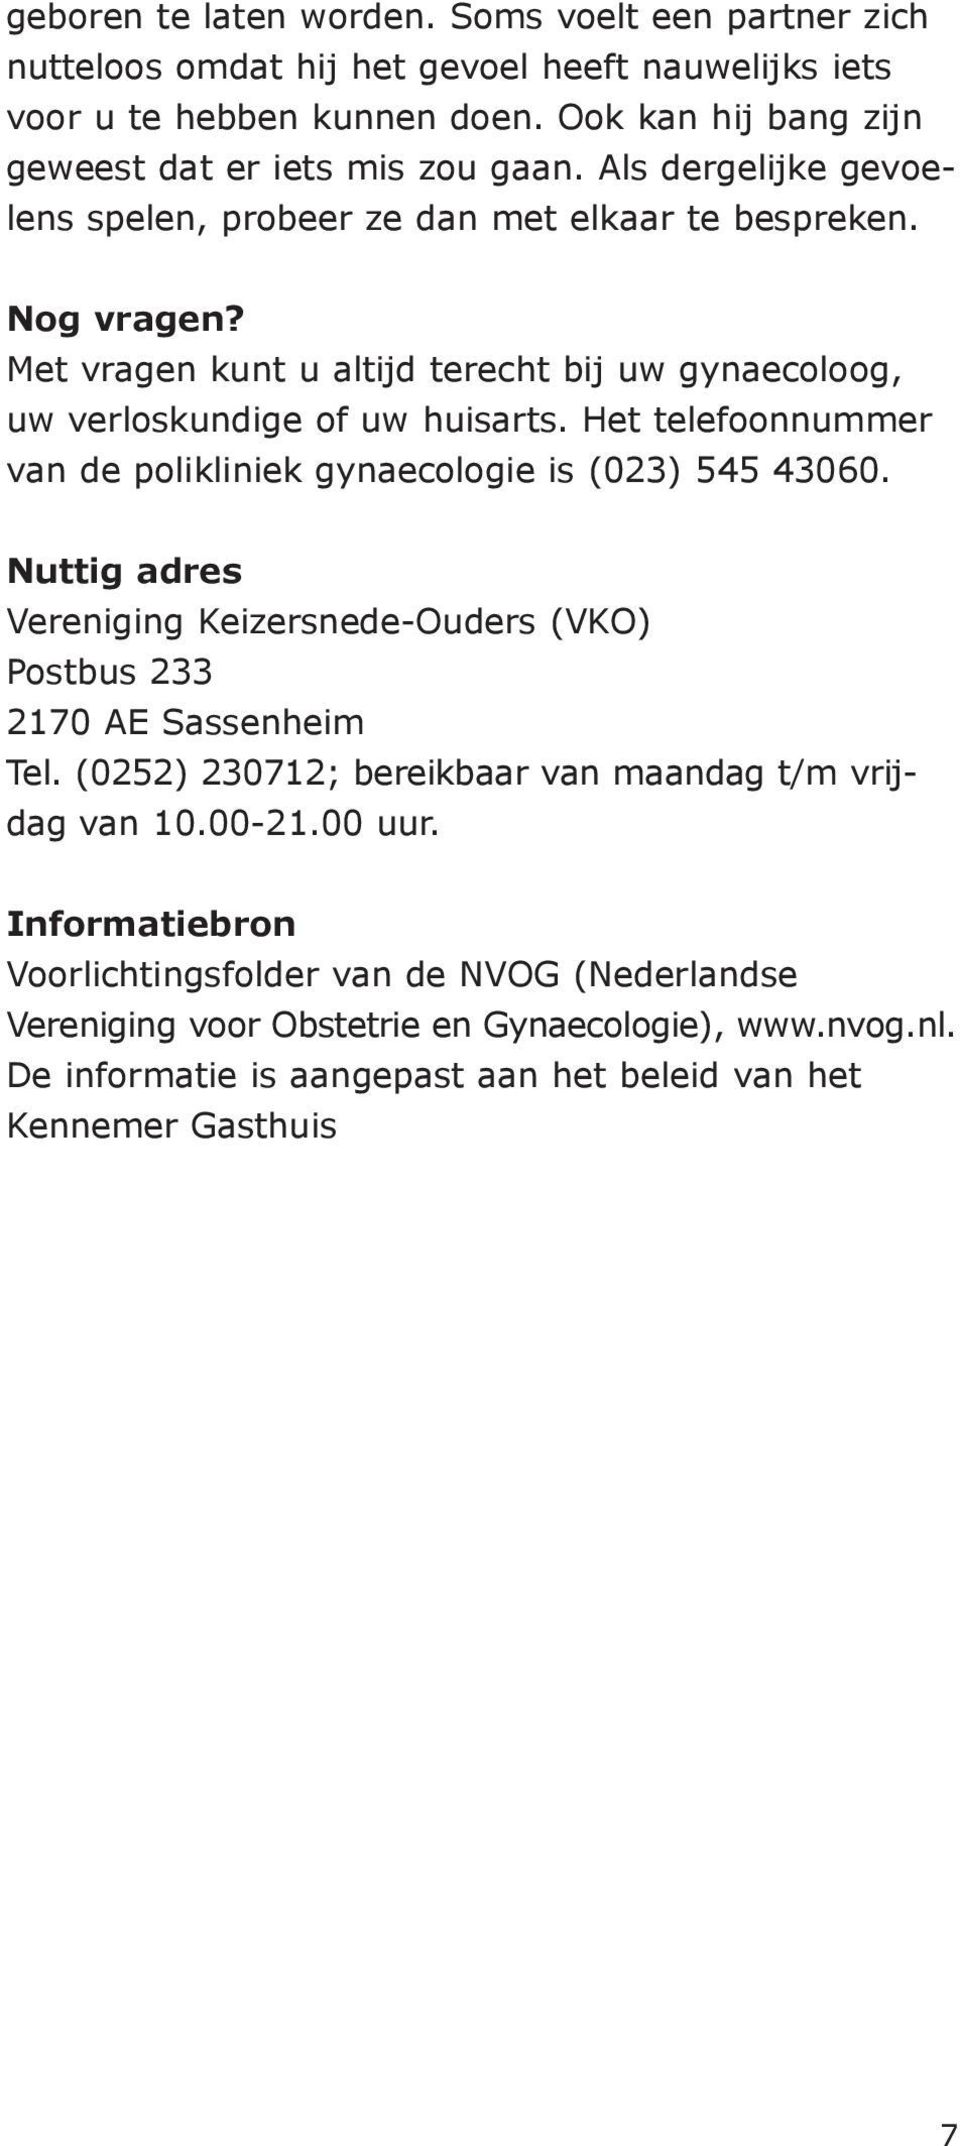 Het telefoonnummer van de polikliniek gynaecologie is (023) 545 43060. Nuttig adres Vereniging Keizersnede-Ouders (VKO) Postbus 233 2170 AE Sassenheim Tel.